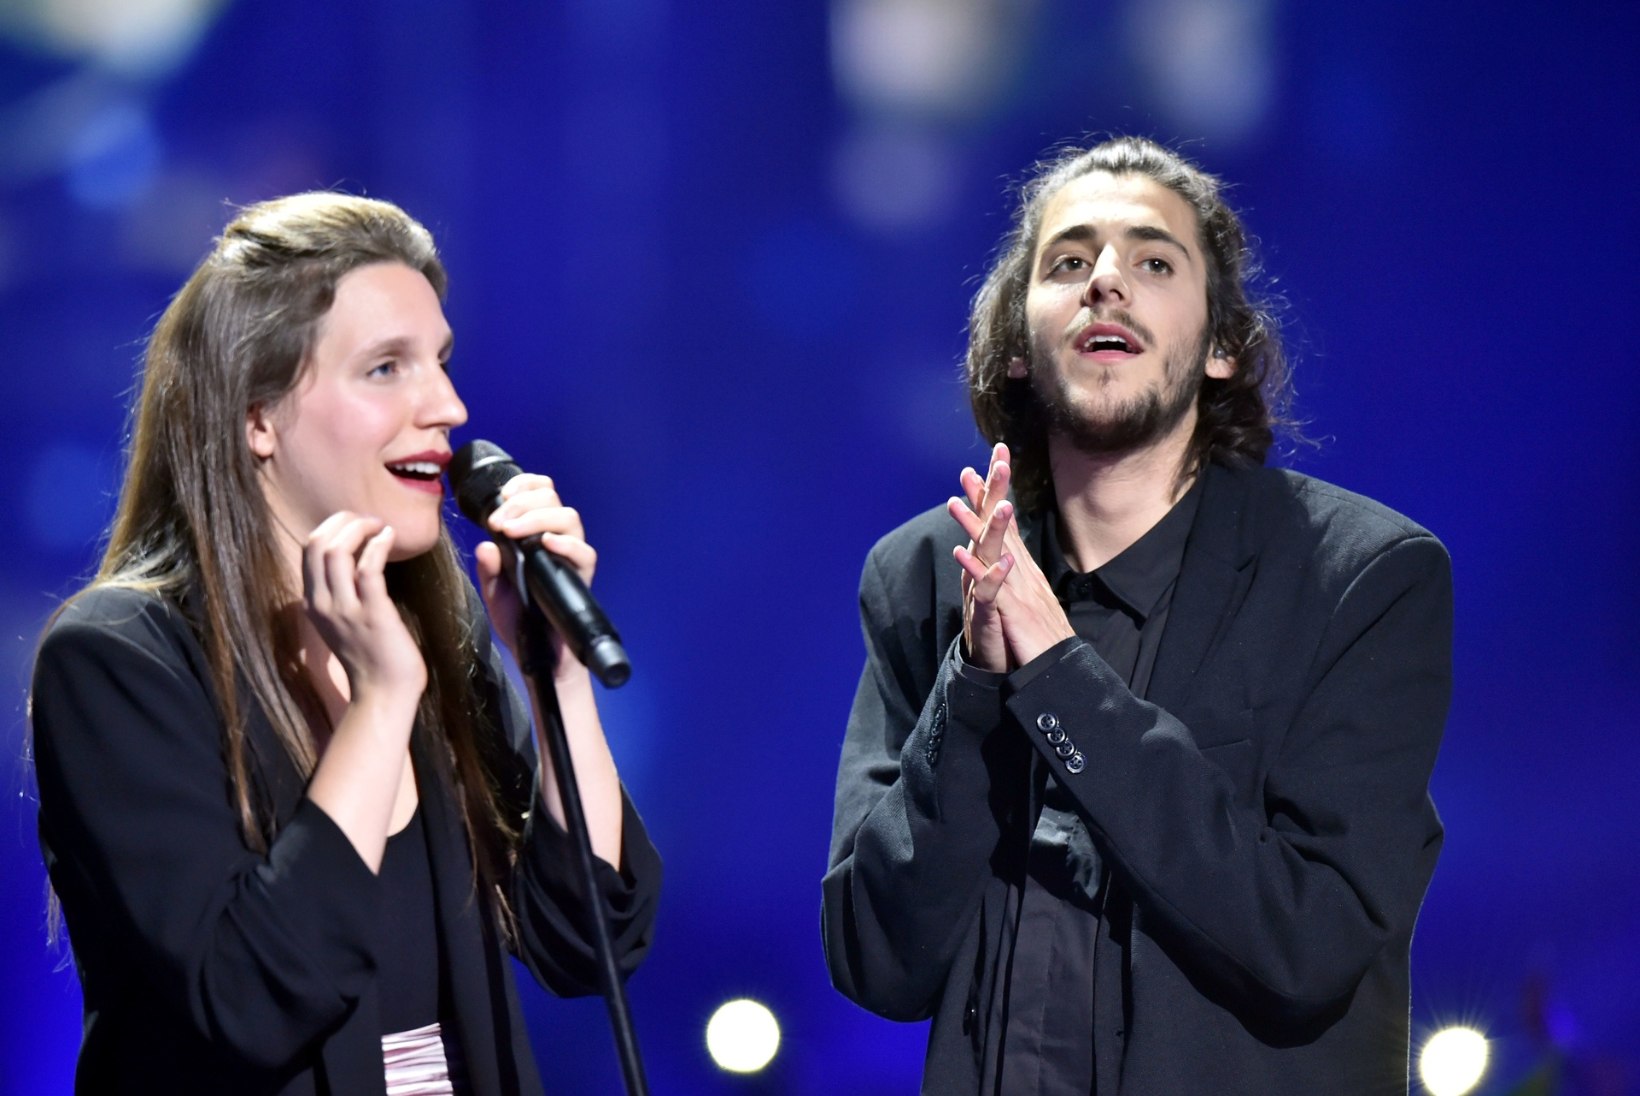 Eurovisioni võitjale Sobralile siirati uus süda